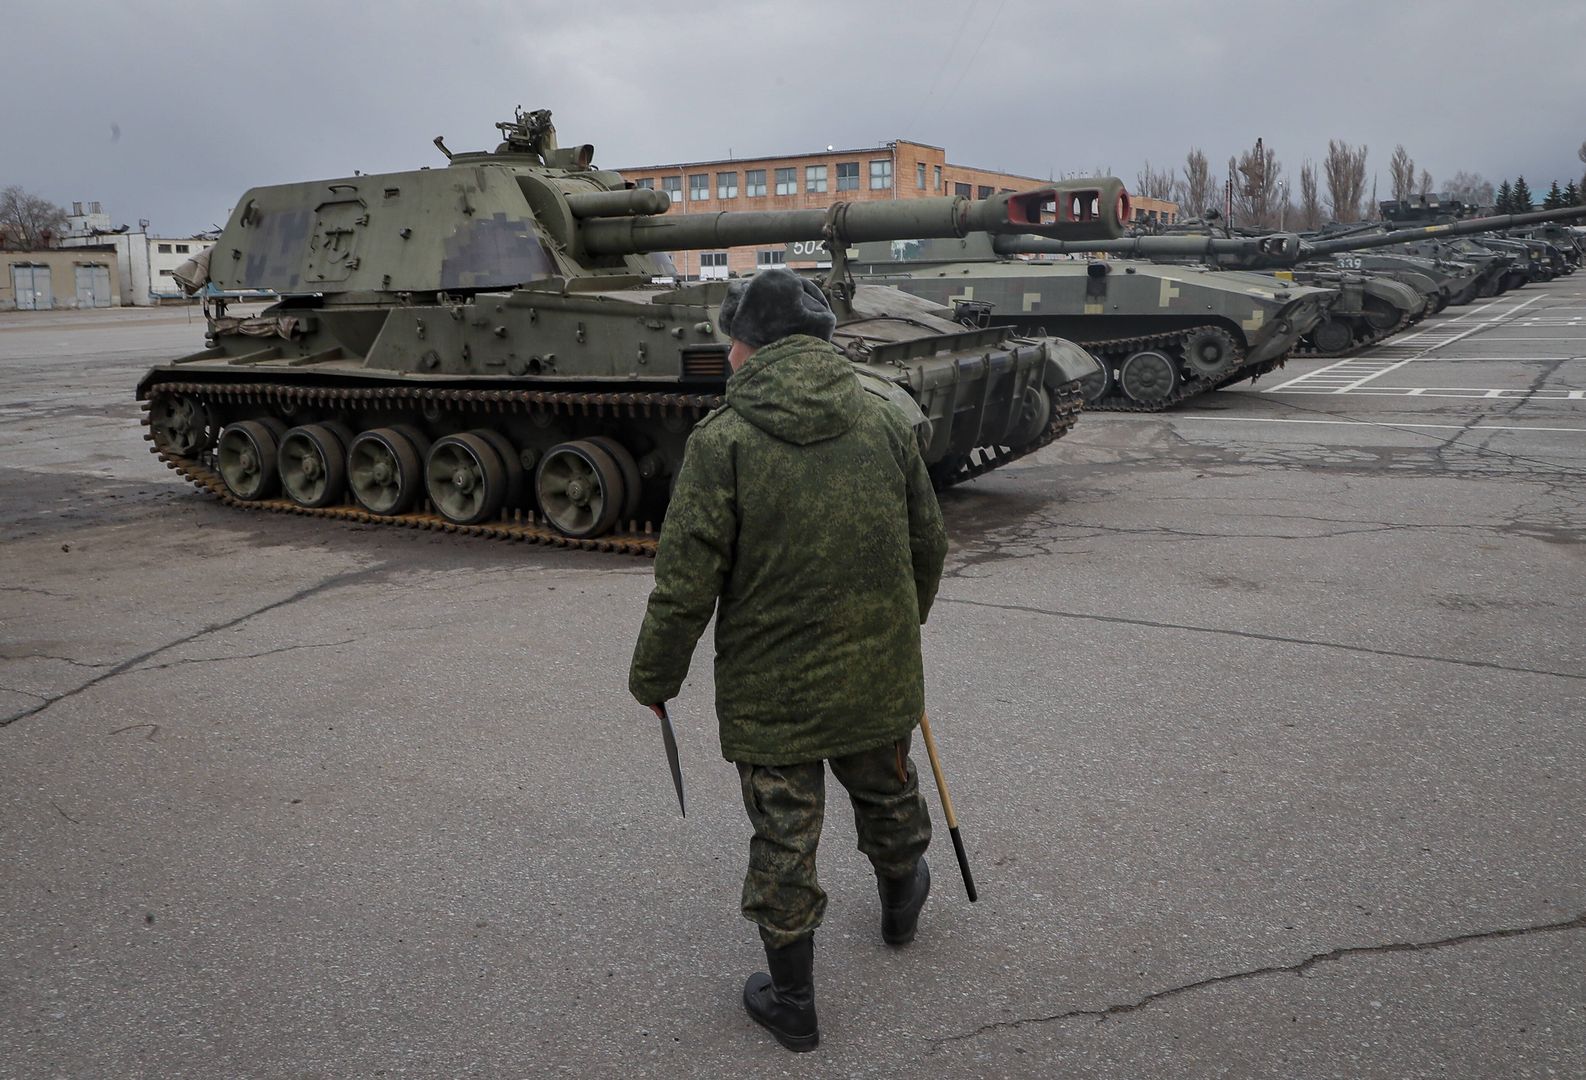 Odmówili dalszej walki z Ukrainą. Taki los spotkał rosyjskich żołnierzy